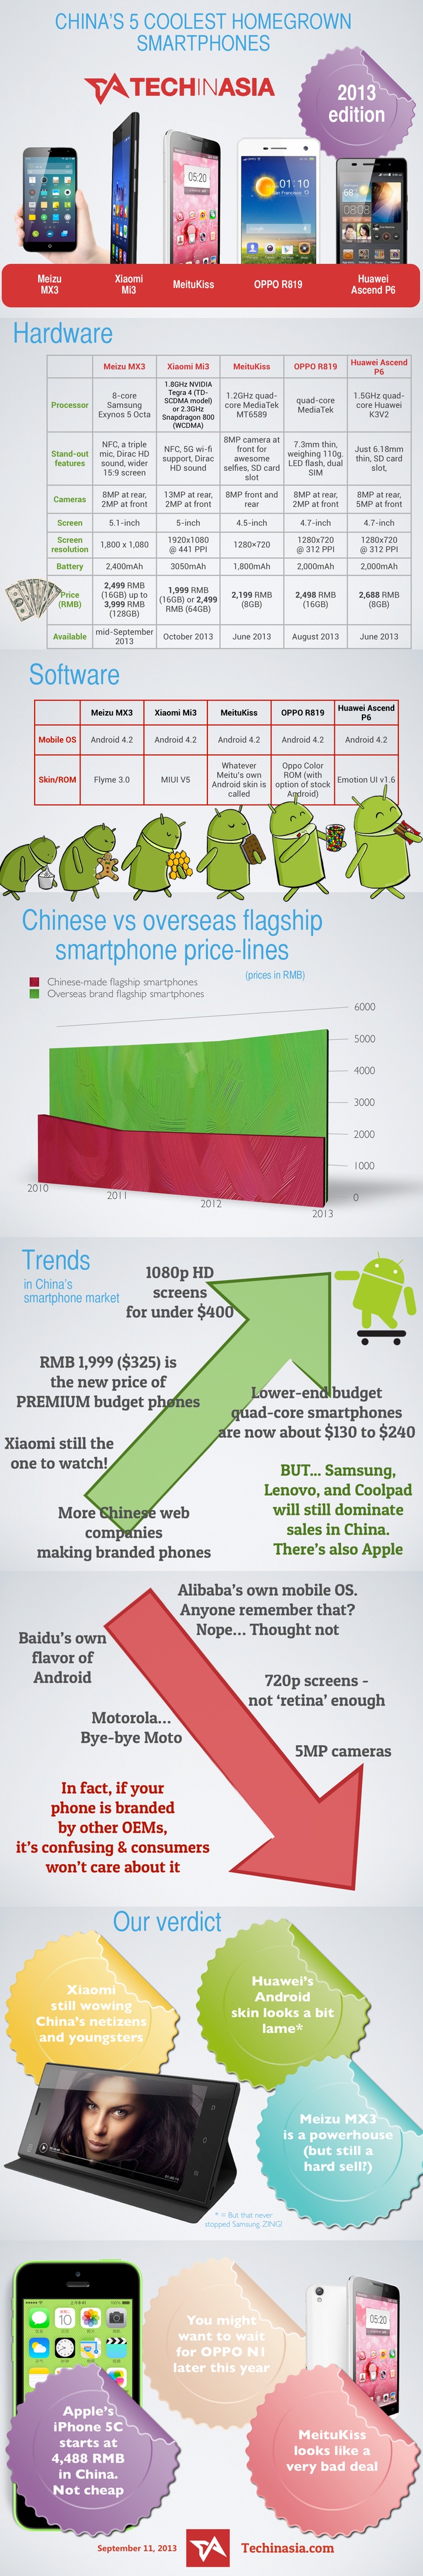 Cool smartphones canteranos, 2013 infografía de China